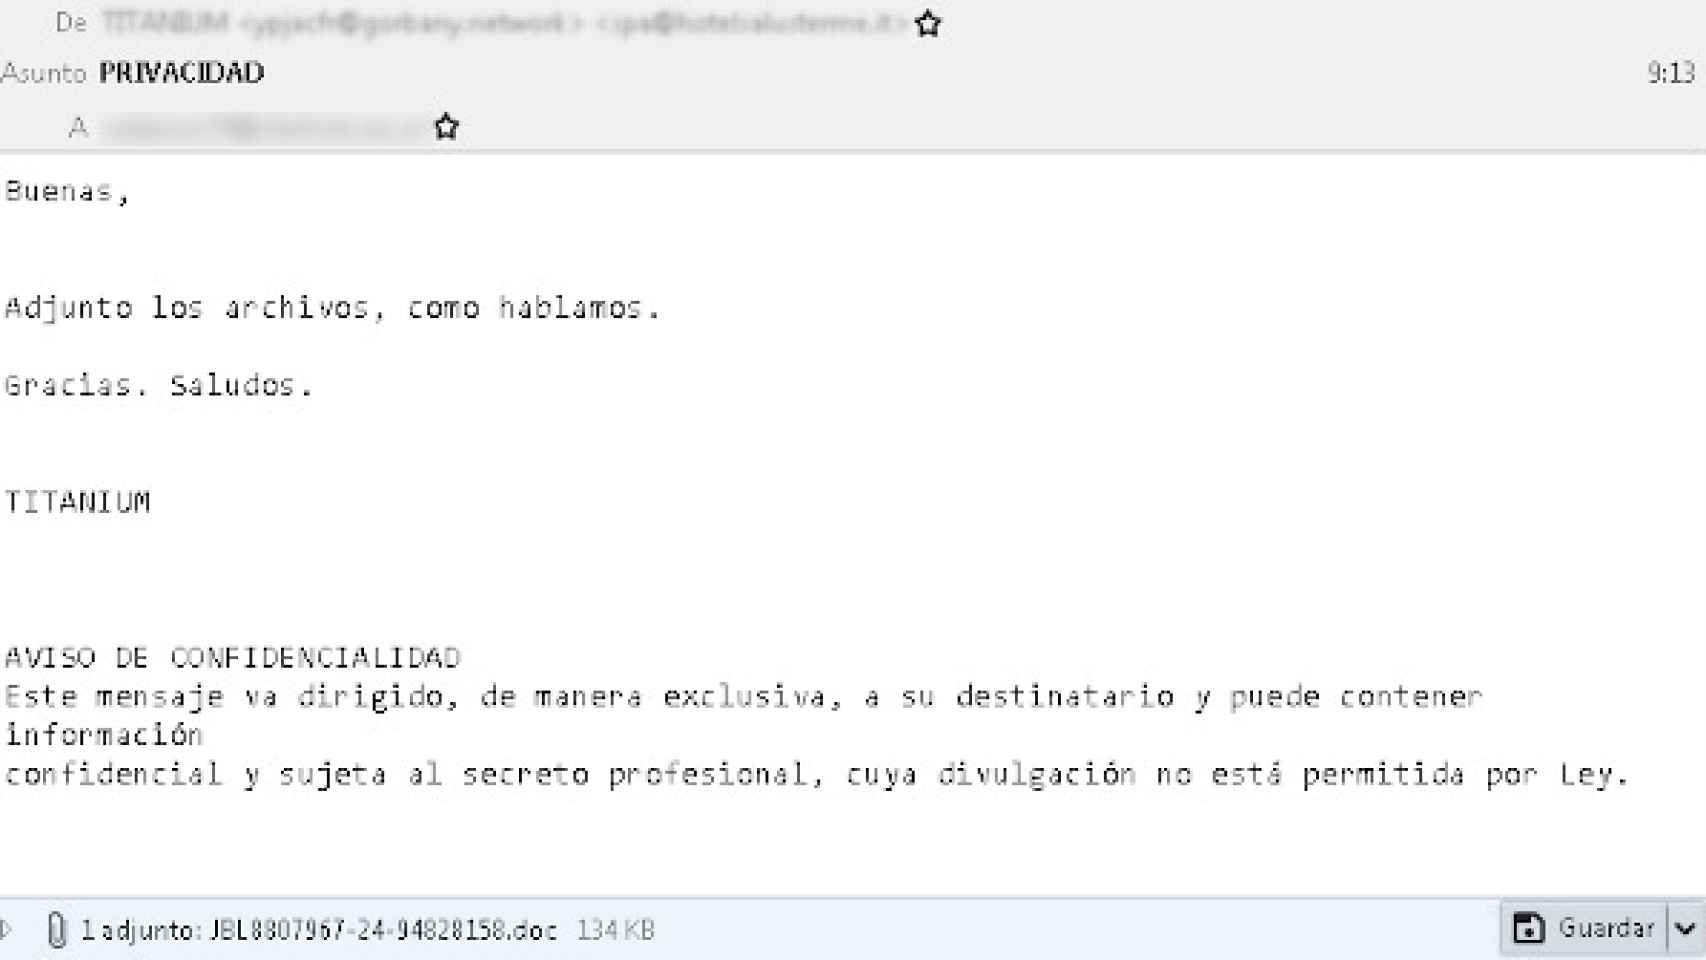 Uno de los correos interceptados por OSI que contiene un virus